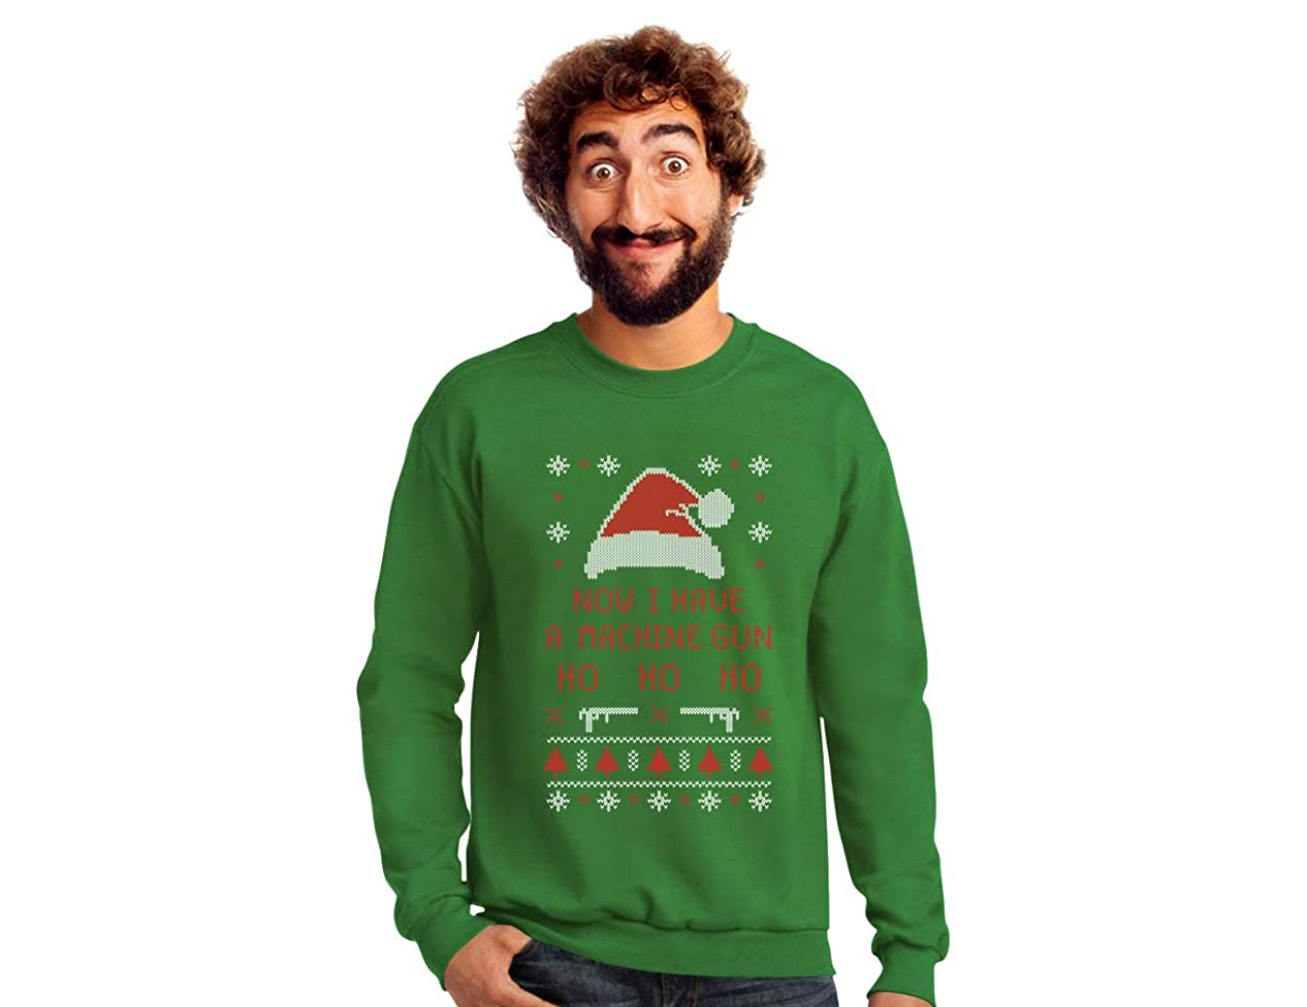 Now I have a machine gun - Ho Ho Ho - Ugly Christmas Sweater